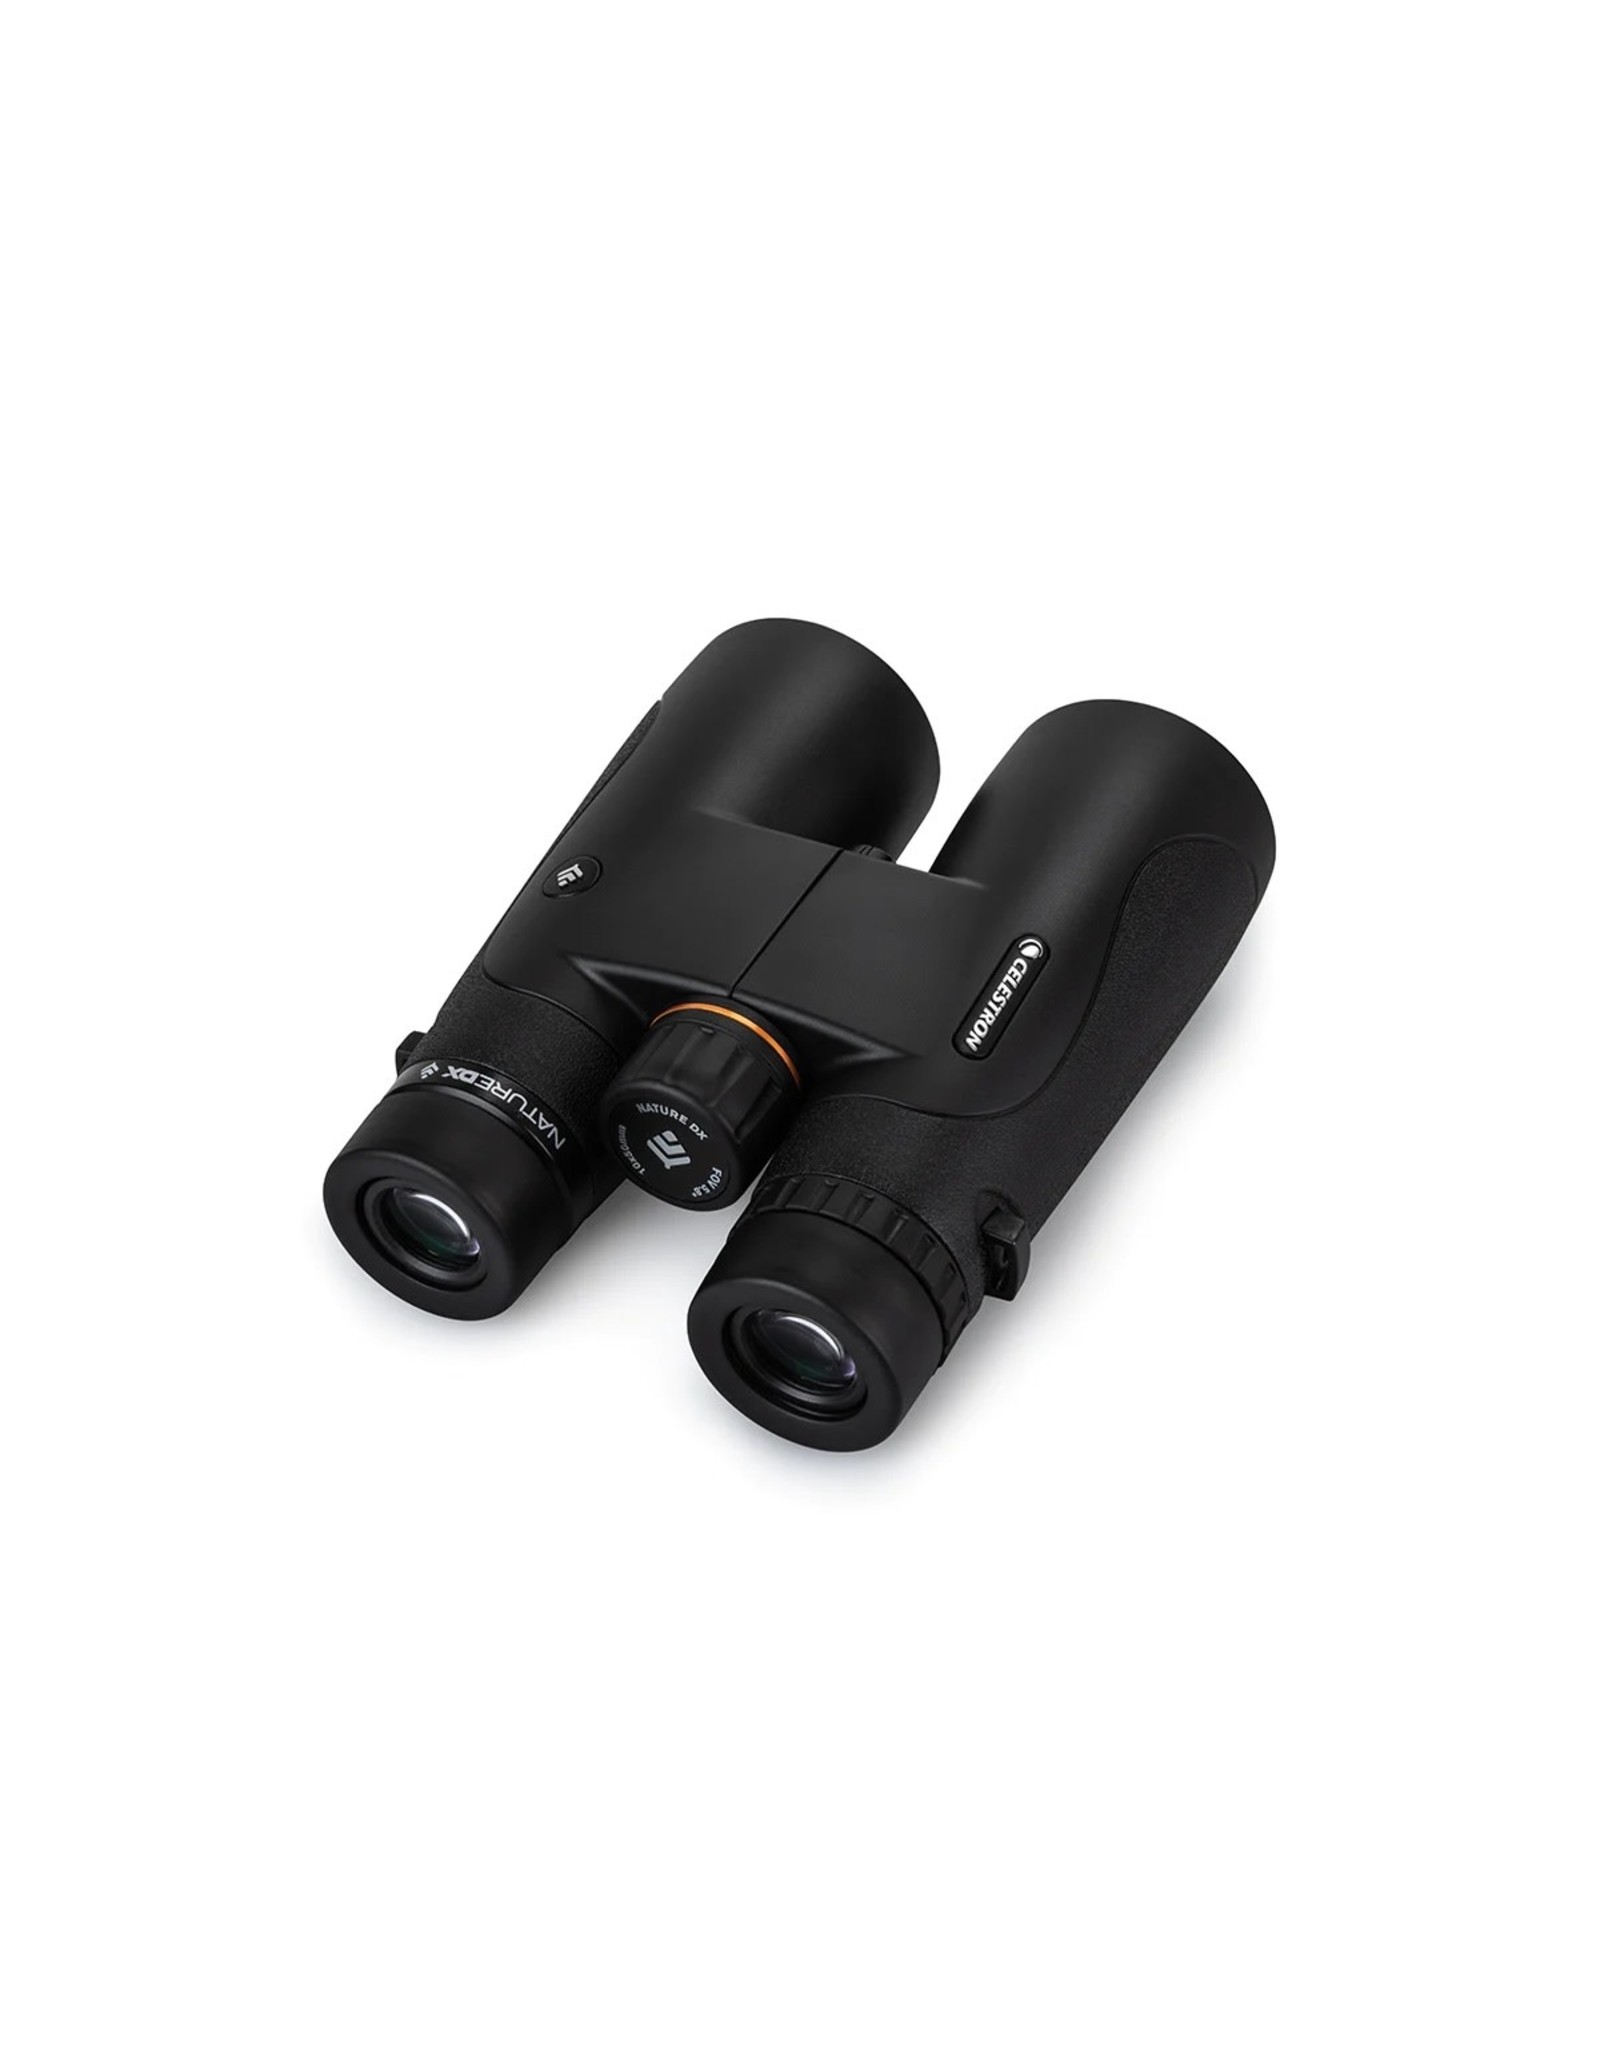 Celestron Celestron Nature DX 10x50 ED Binoculars - BLACK